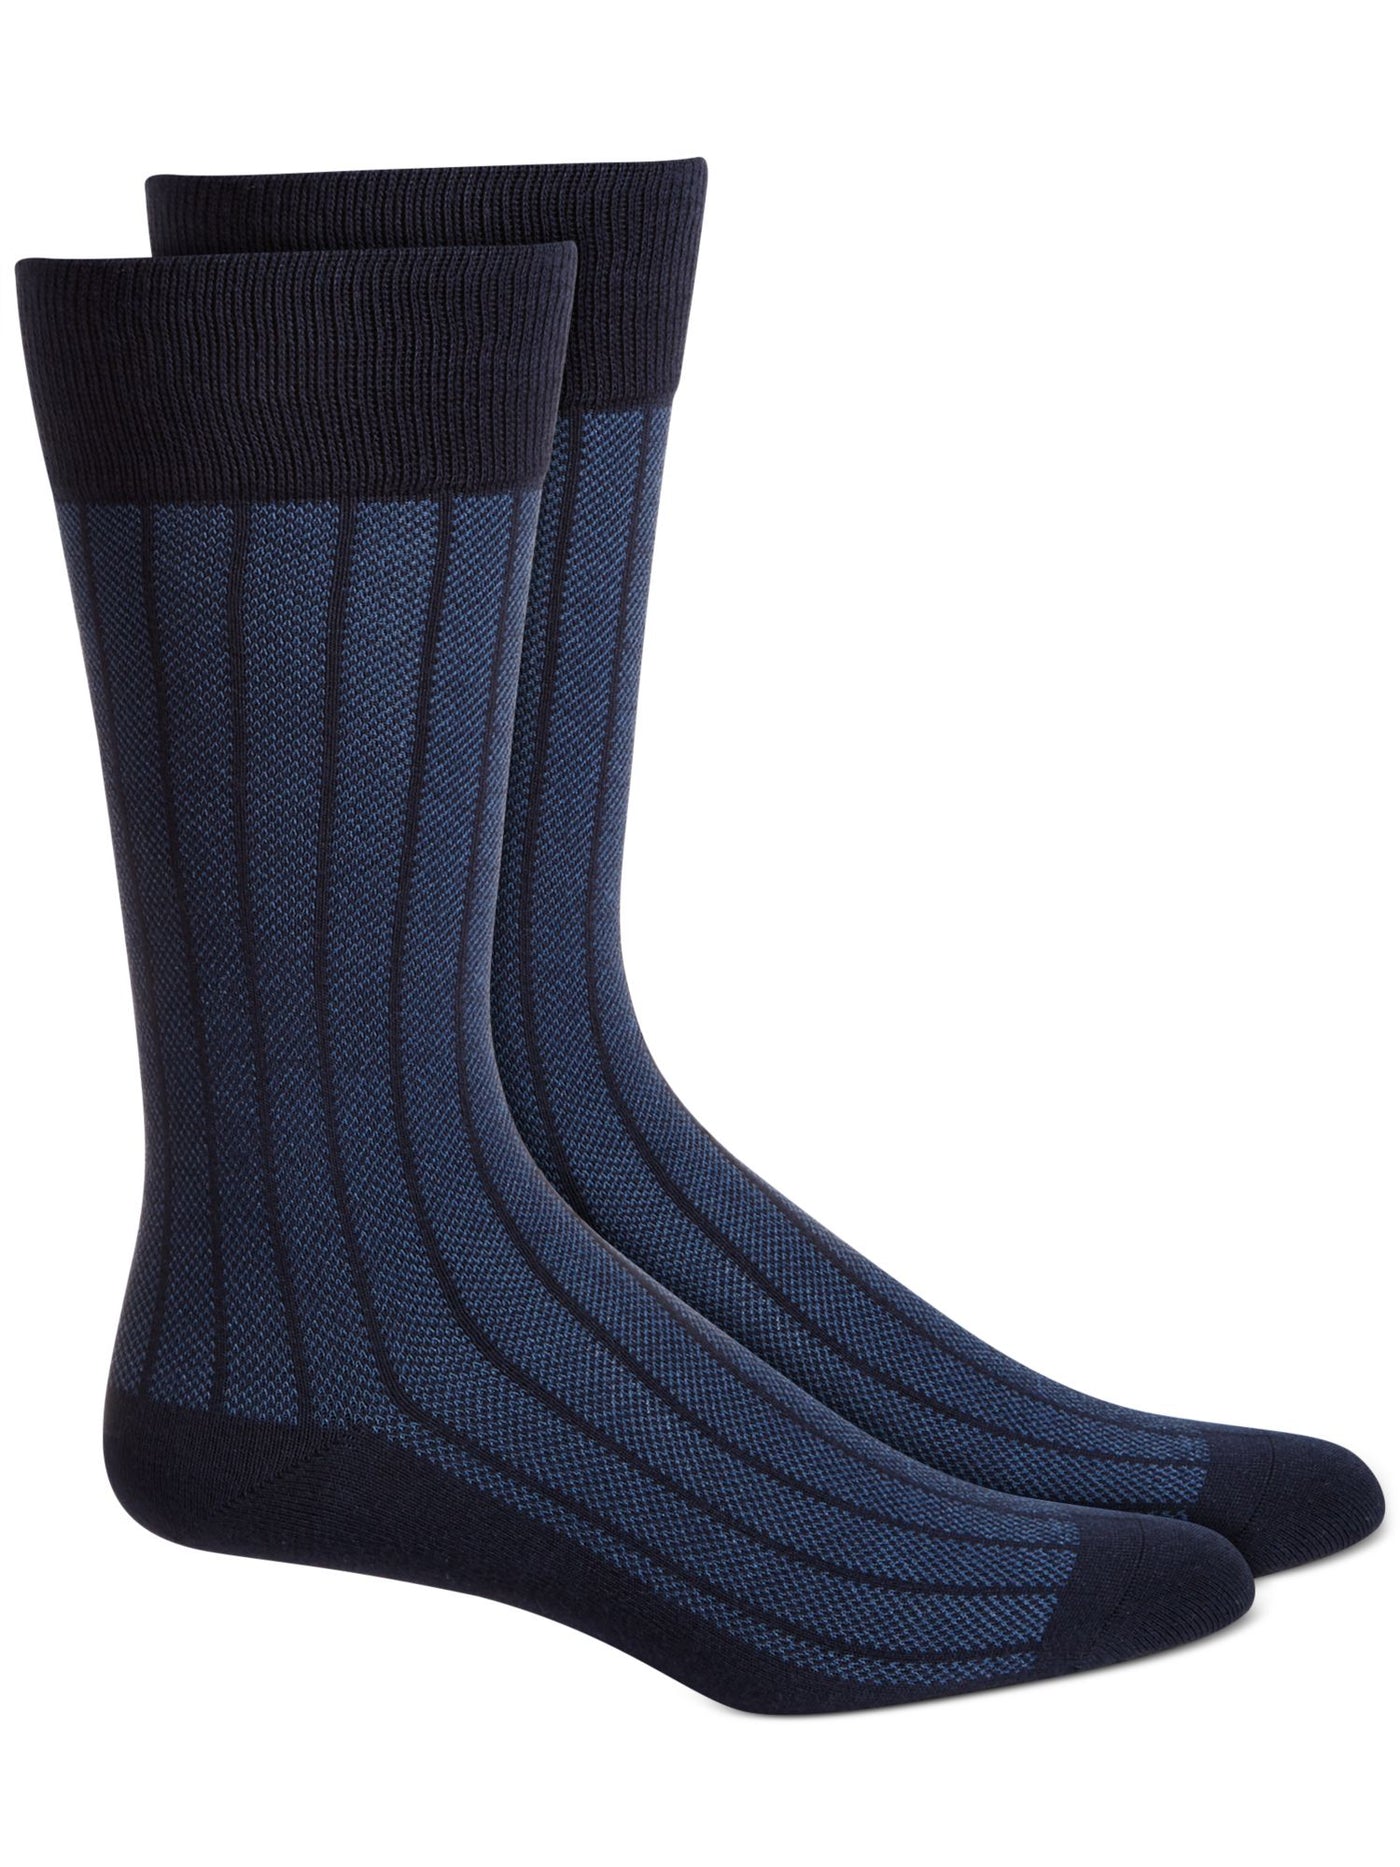 ALFANI Blue Striped Dress Crew Socks